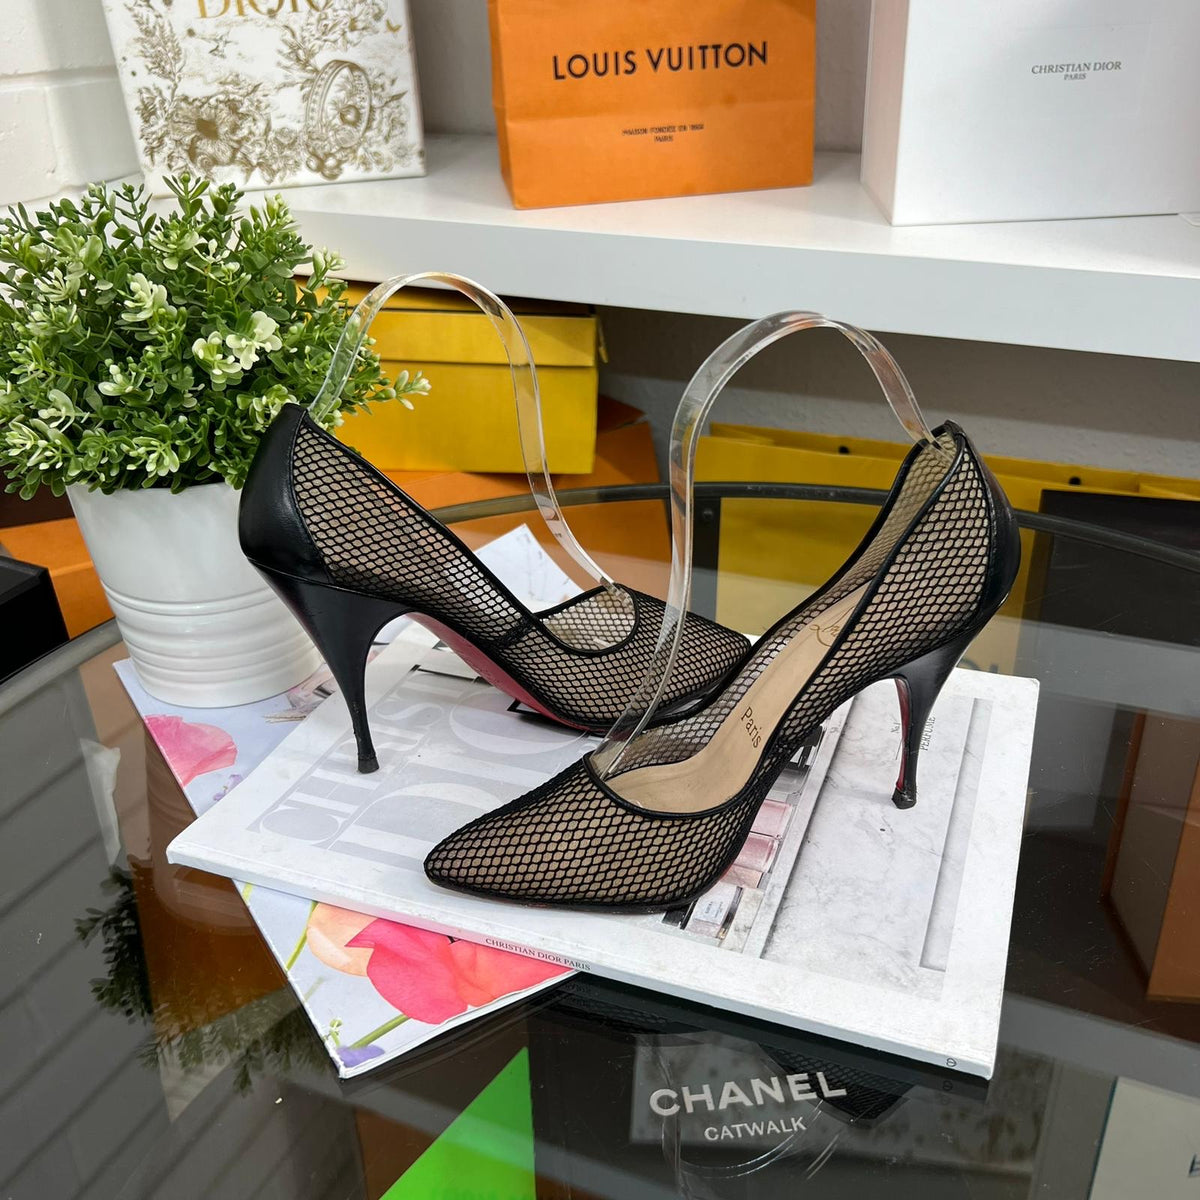 Christian Louboutin, Louis Vuitton, Chanel!